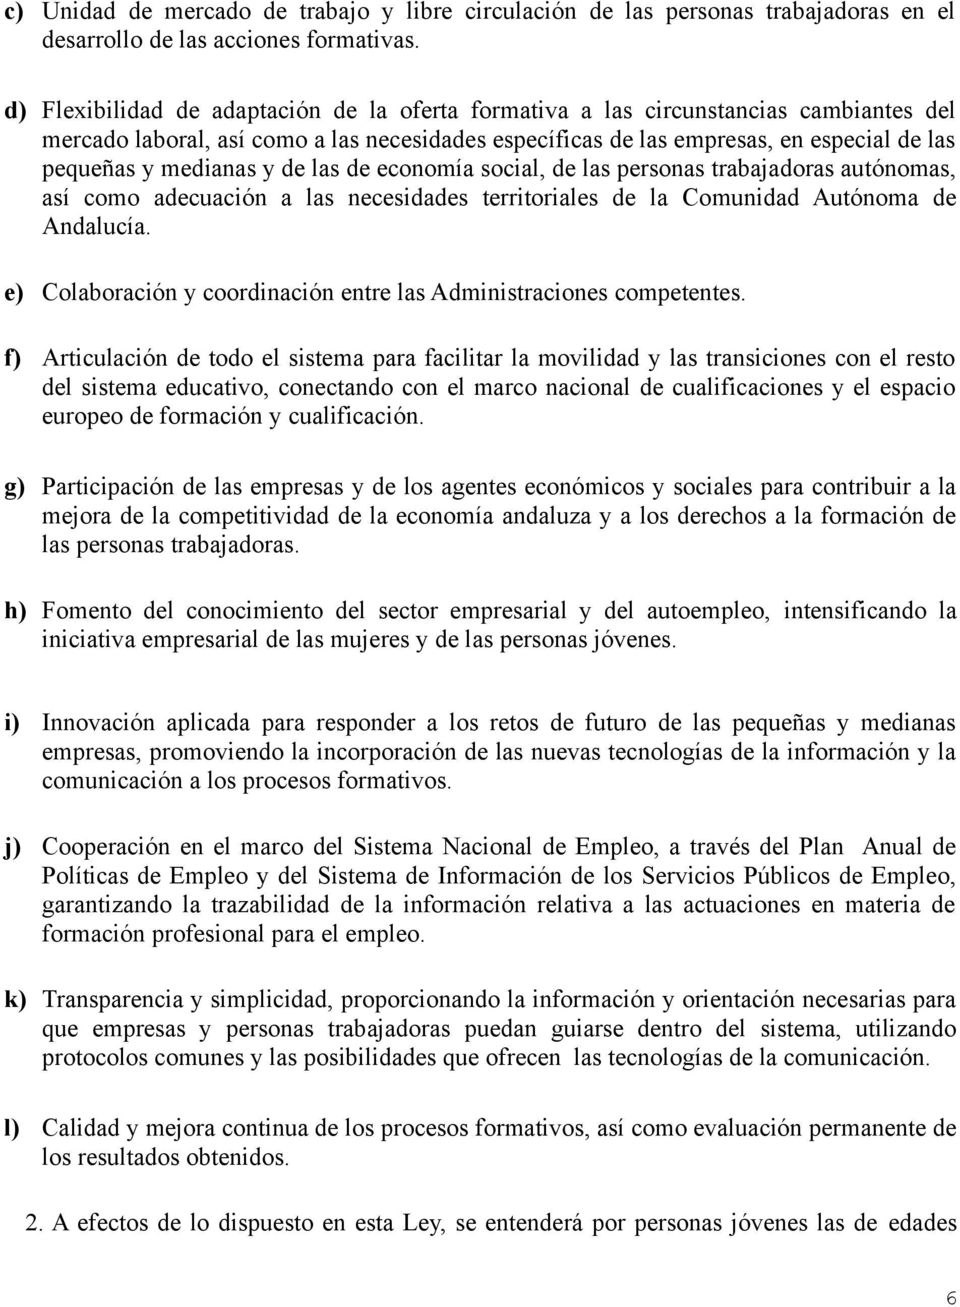 medianas y de las de economía social, de las personas trabajadoras autónomas, así como adecuación a las necesidades territoriales de la Comunidad Autónoma de Andalucía.